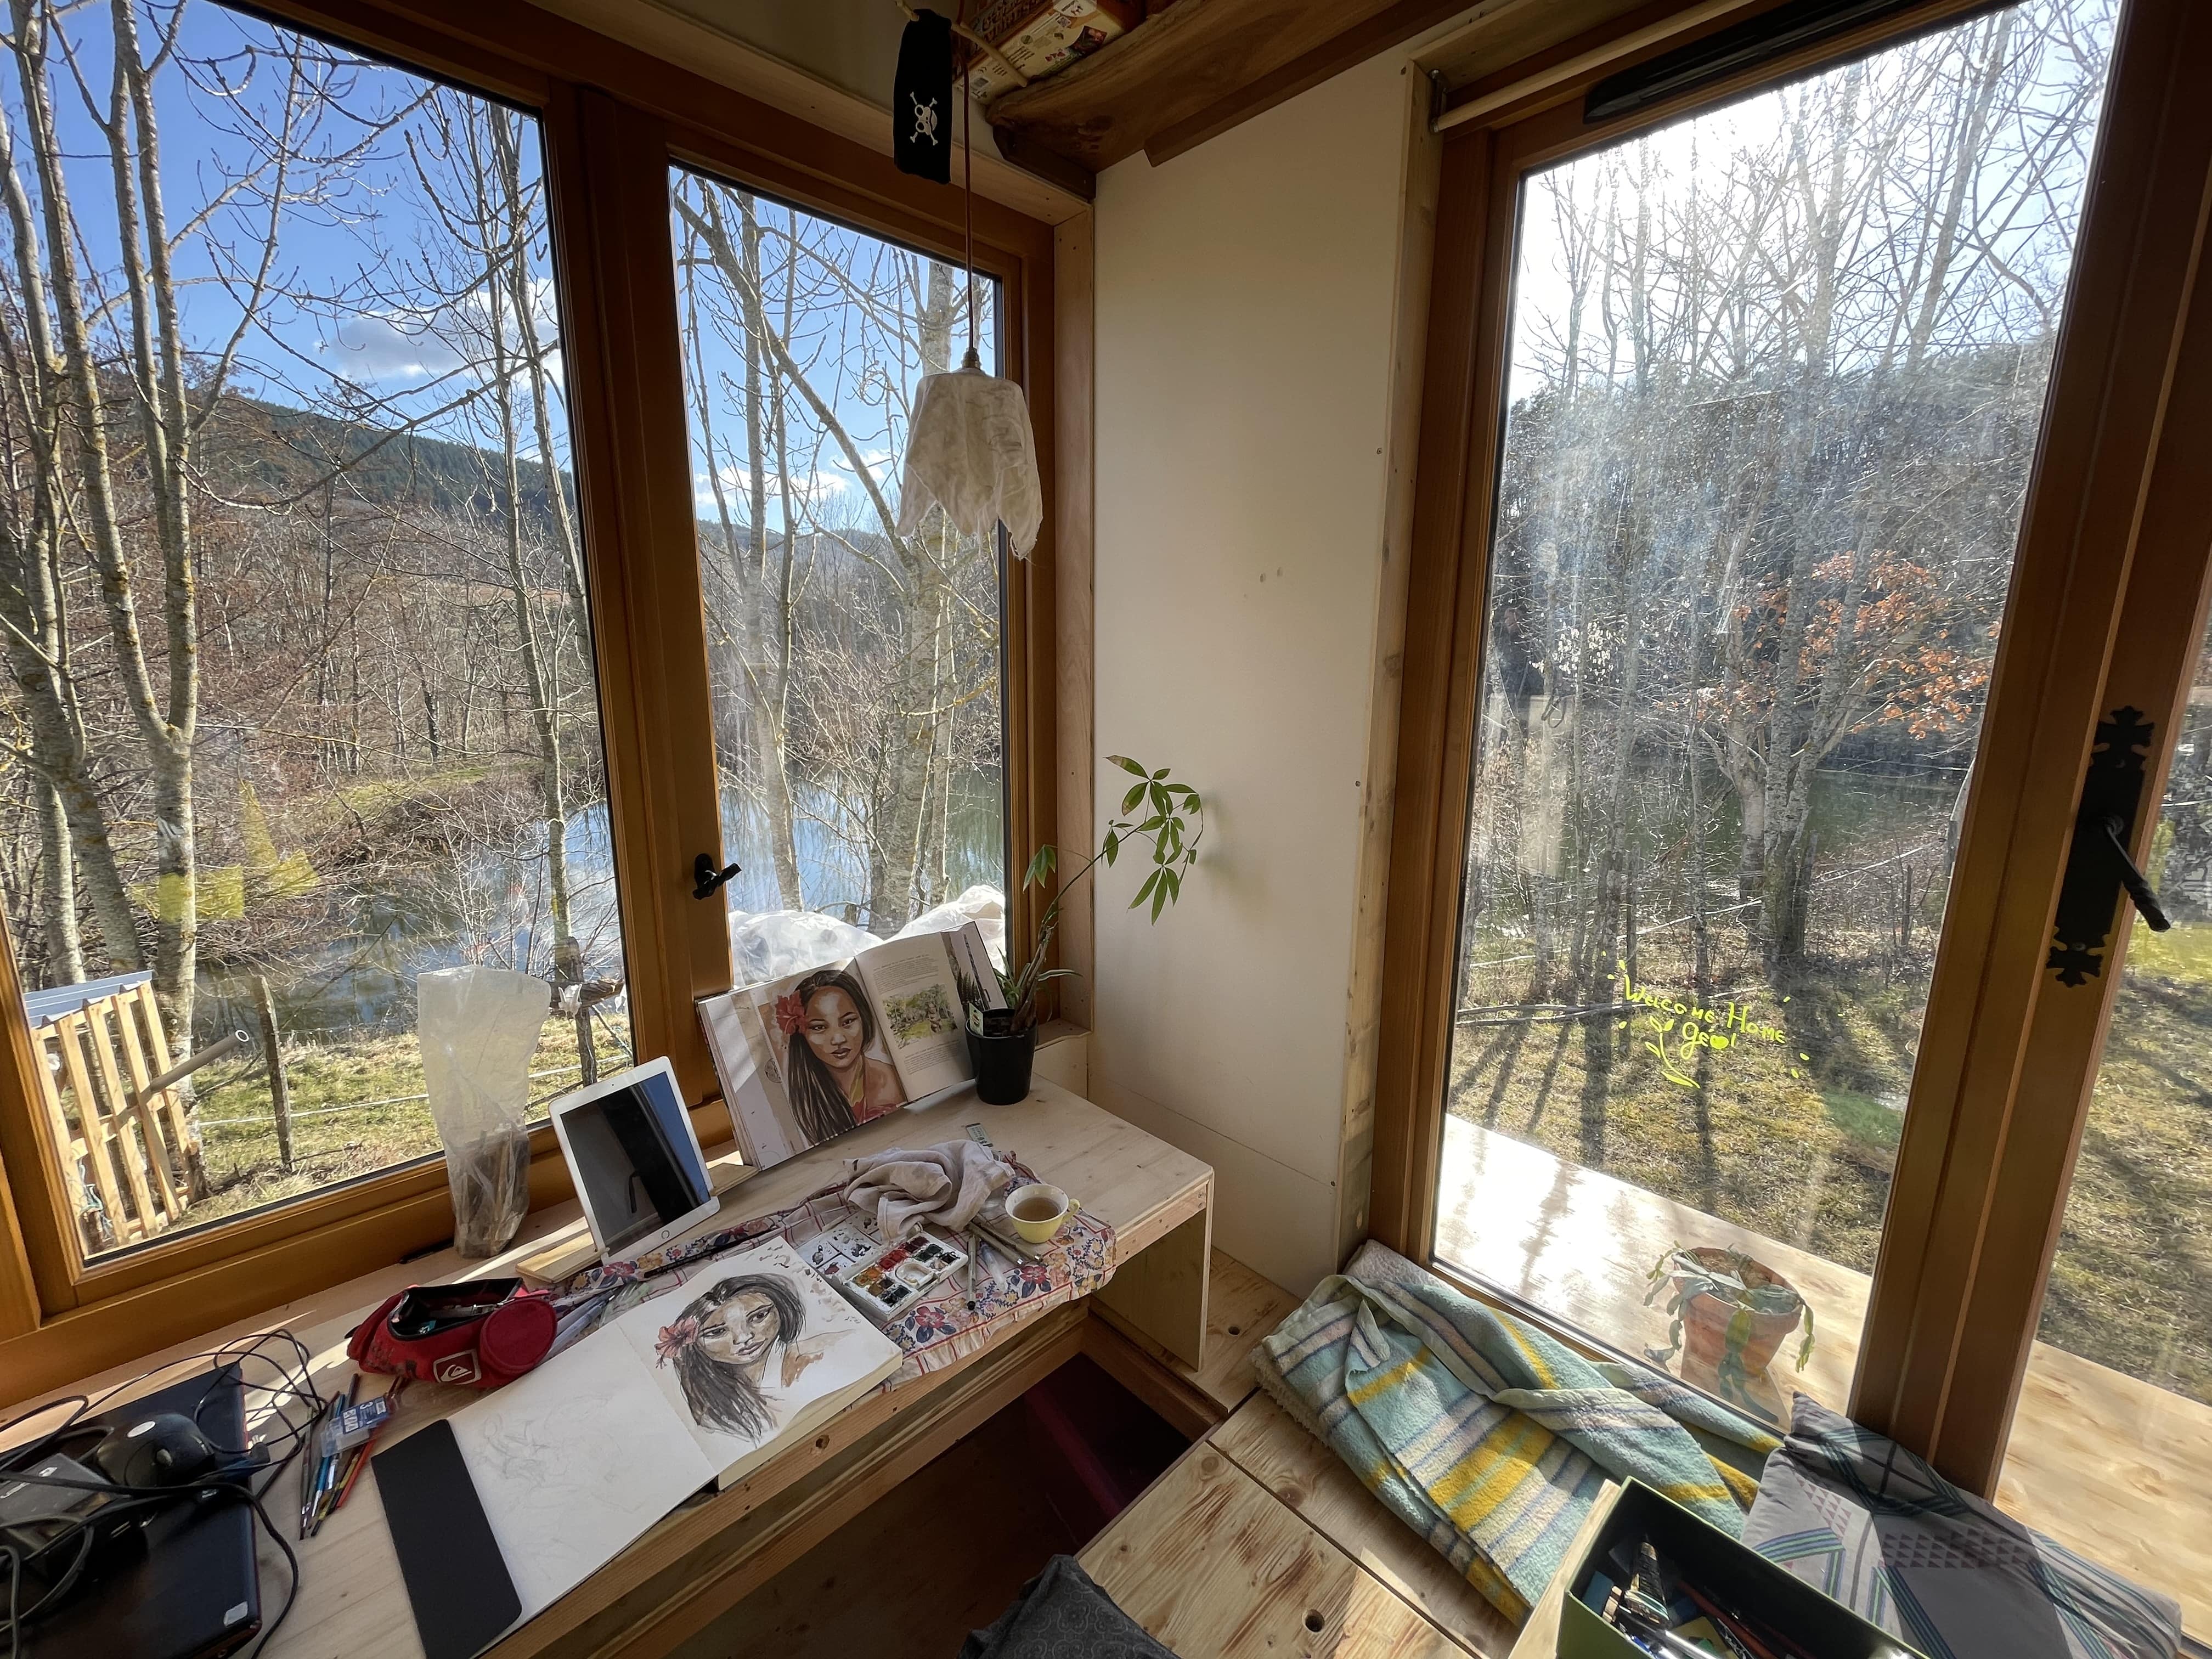 Celards kleines Haus hat viele Fenster, durch die er den Blick auf die Natur genießen kann.